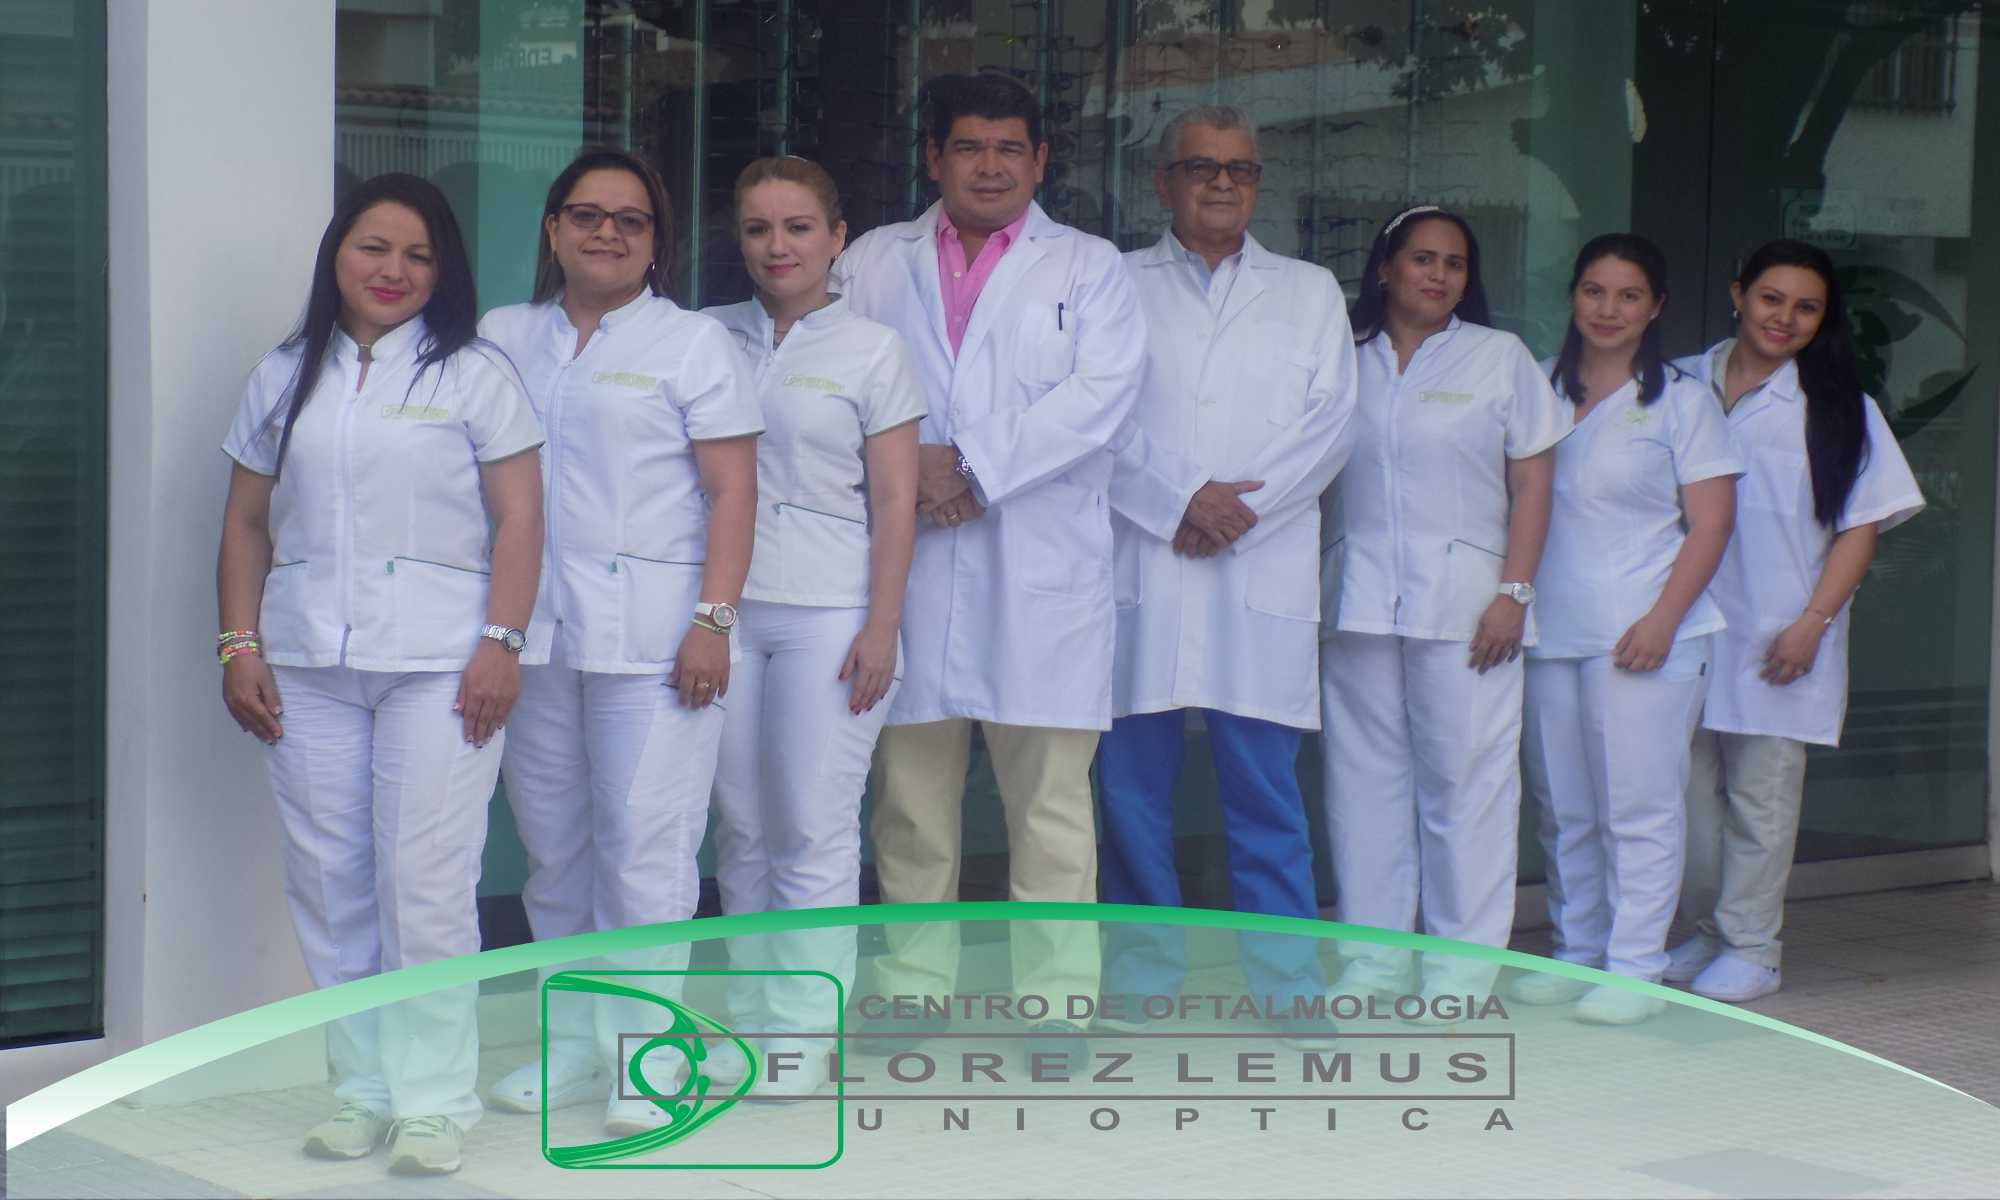 Centro de oftalmologia unioptica Florez Lemus